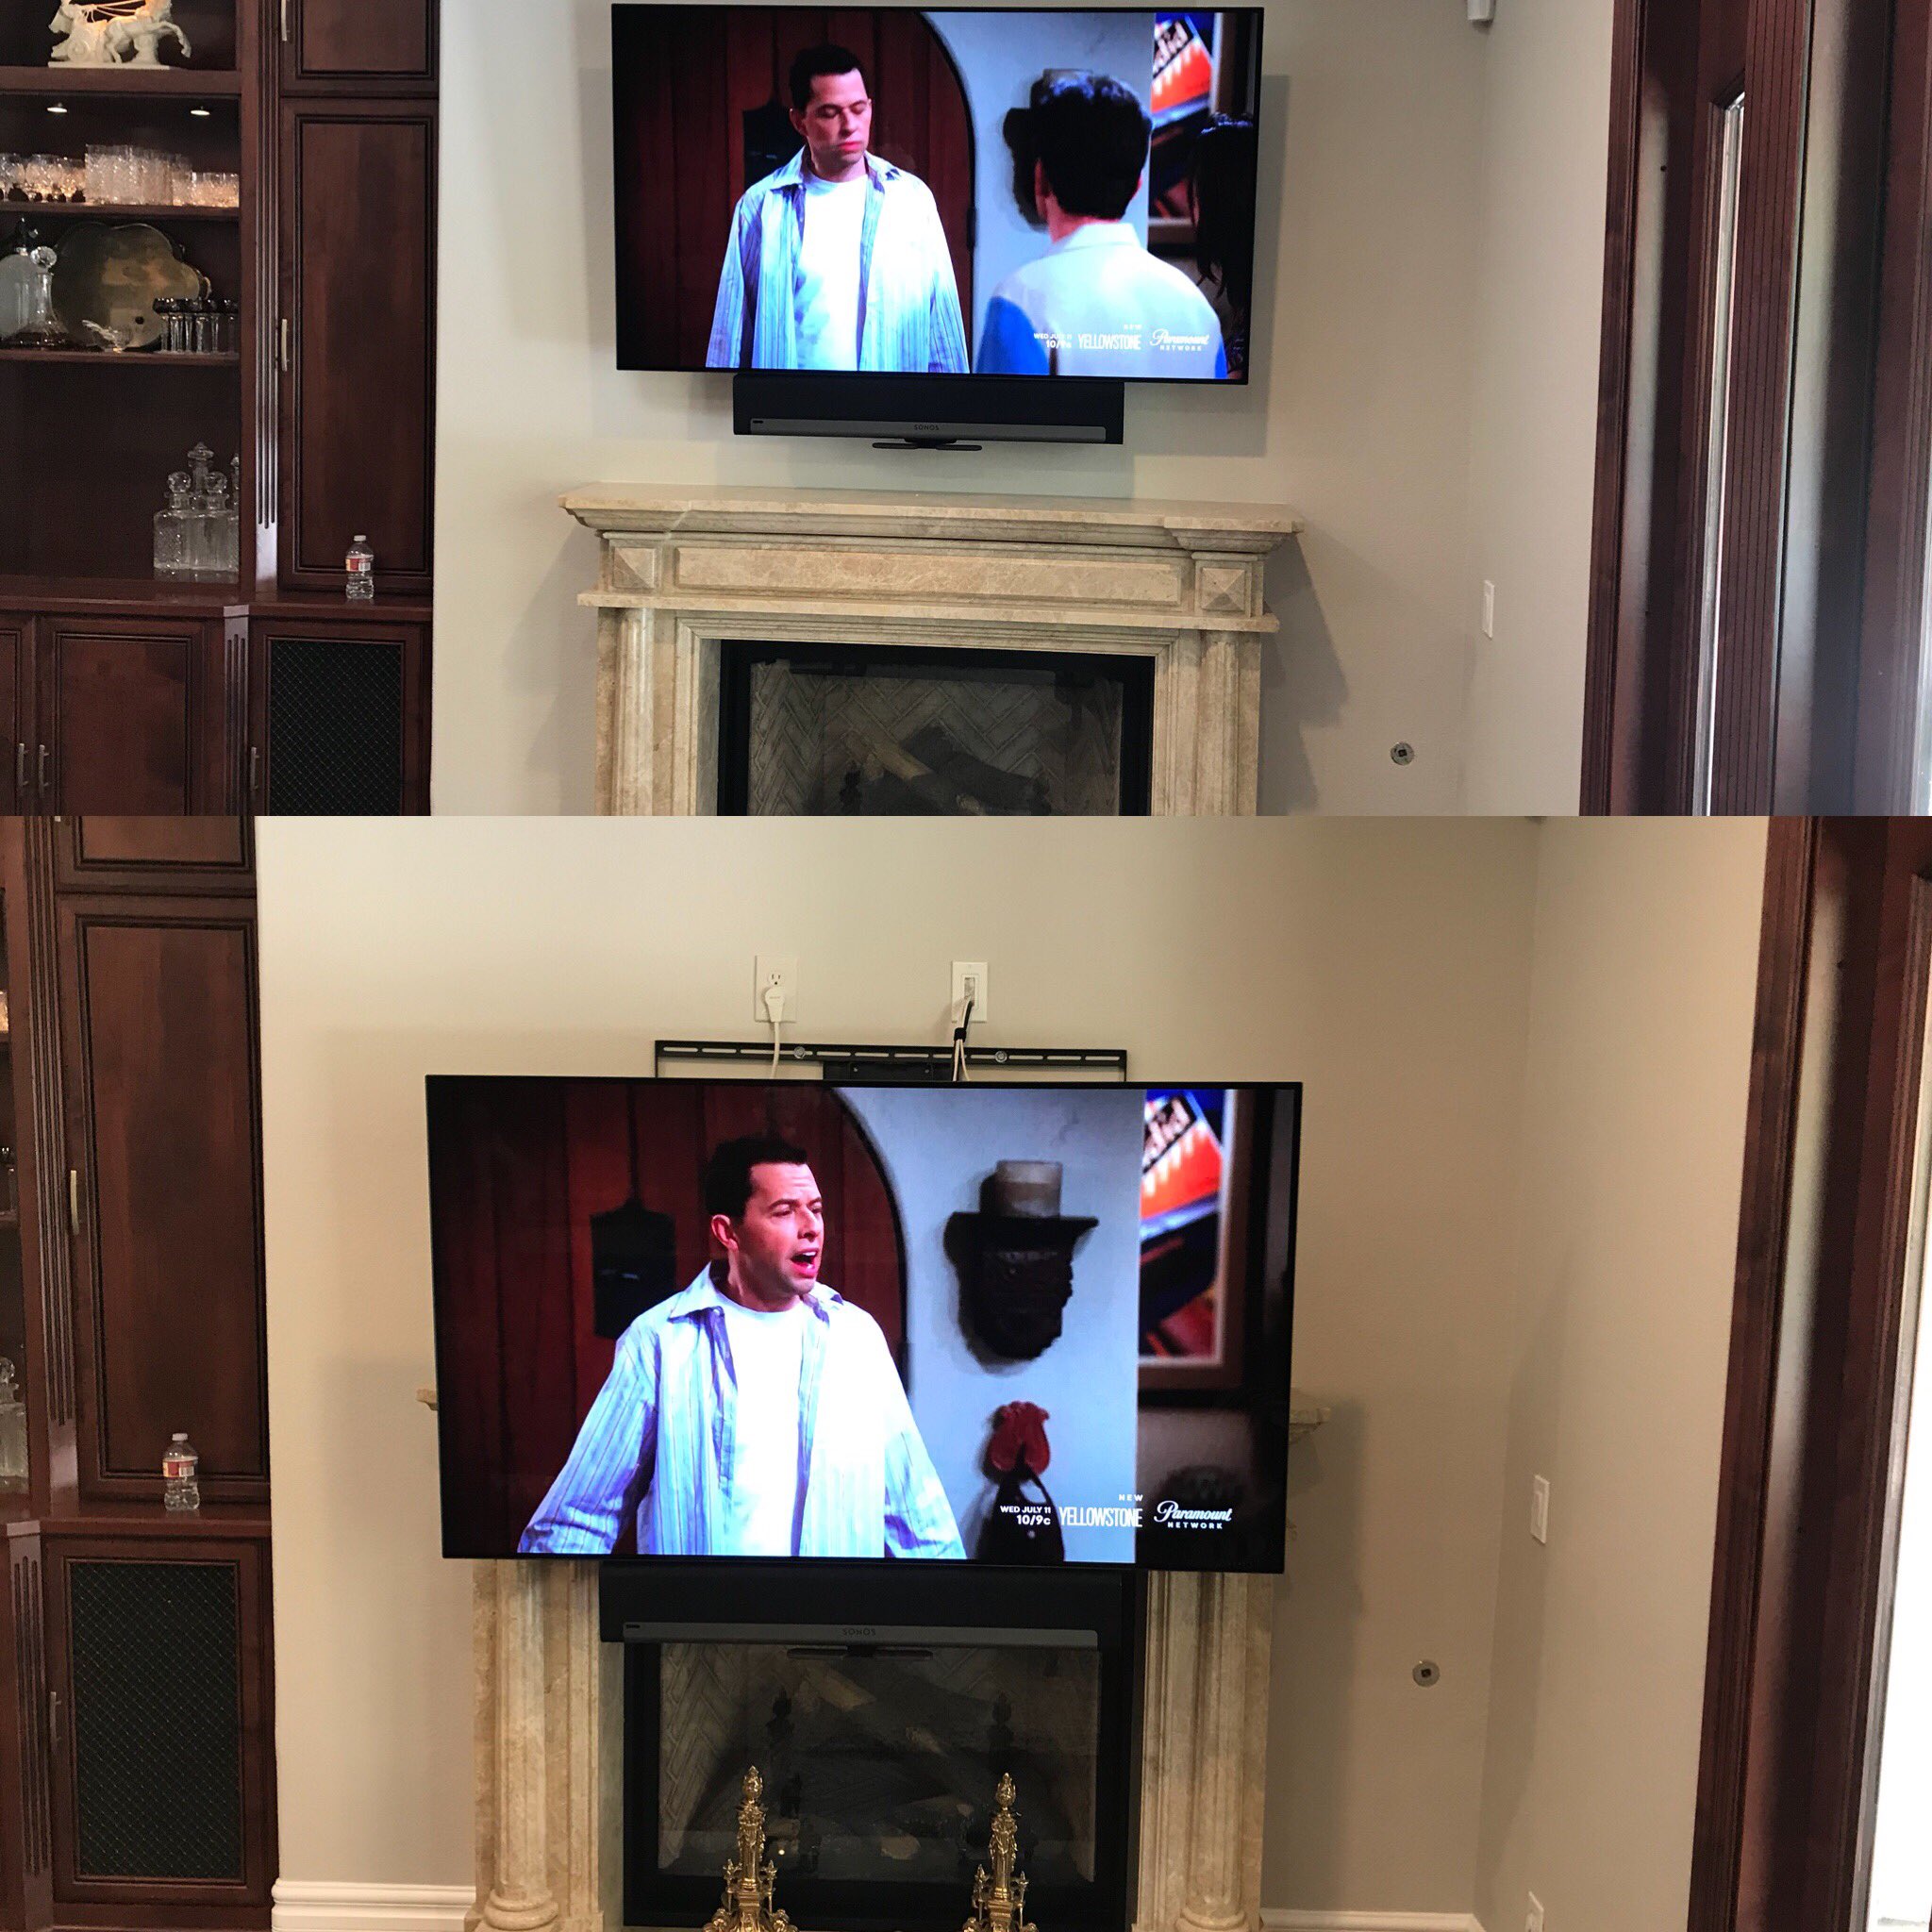 Sommetider fordøjelse Stramme Wil Vitela on Twitter: "TV too high over the fireplace? Have us install a  pull down TV mount #HomeTechnologyExpert #WilVitela #TV #HomeTheater  https://t.co/ArklQNxMcT" / Twitter